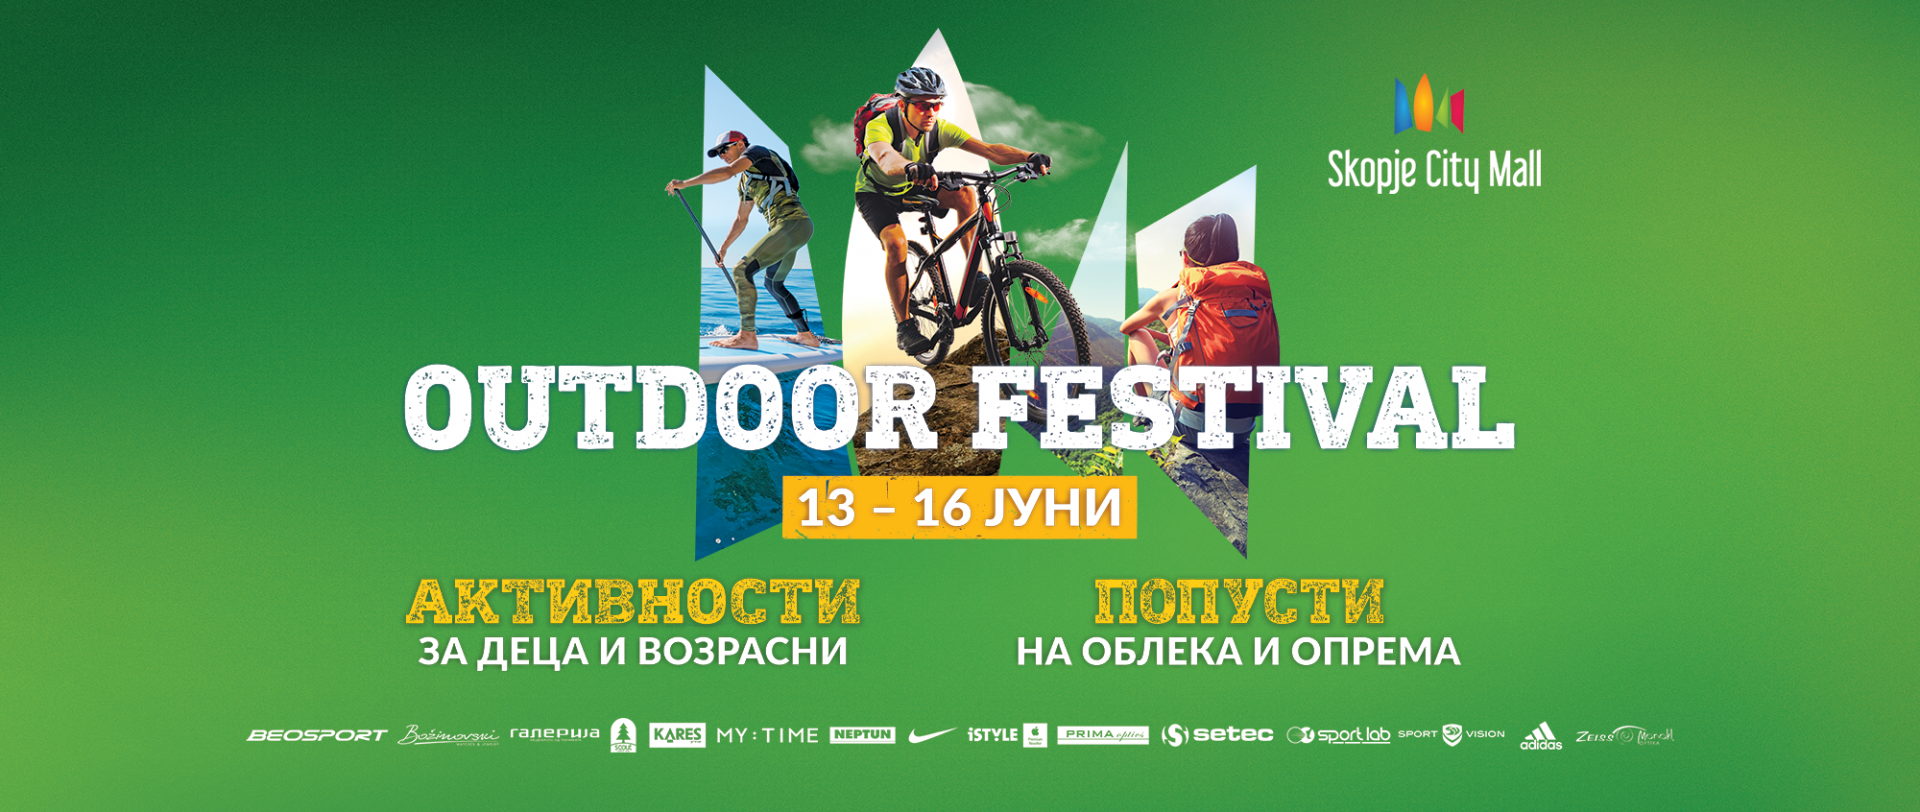 Outdoor Festival во Скопје Сити Мол - викенд исполнет со попусти и активности